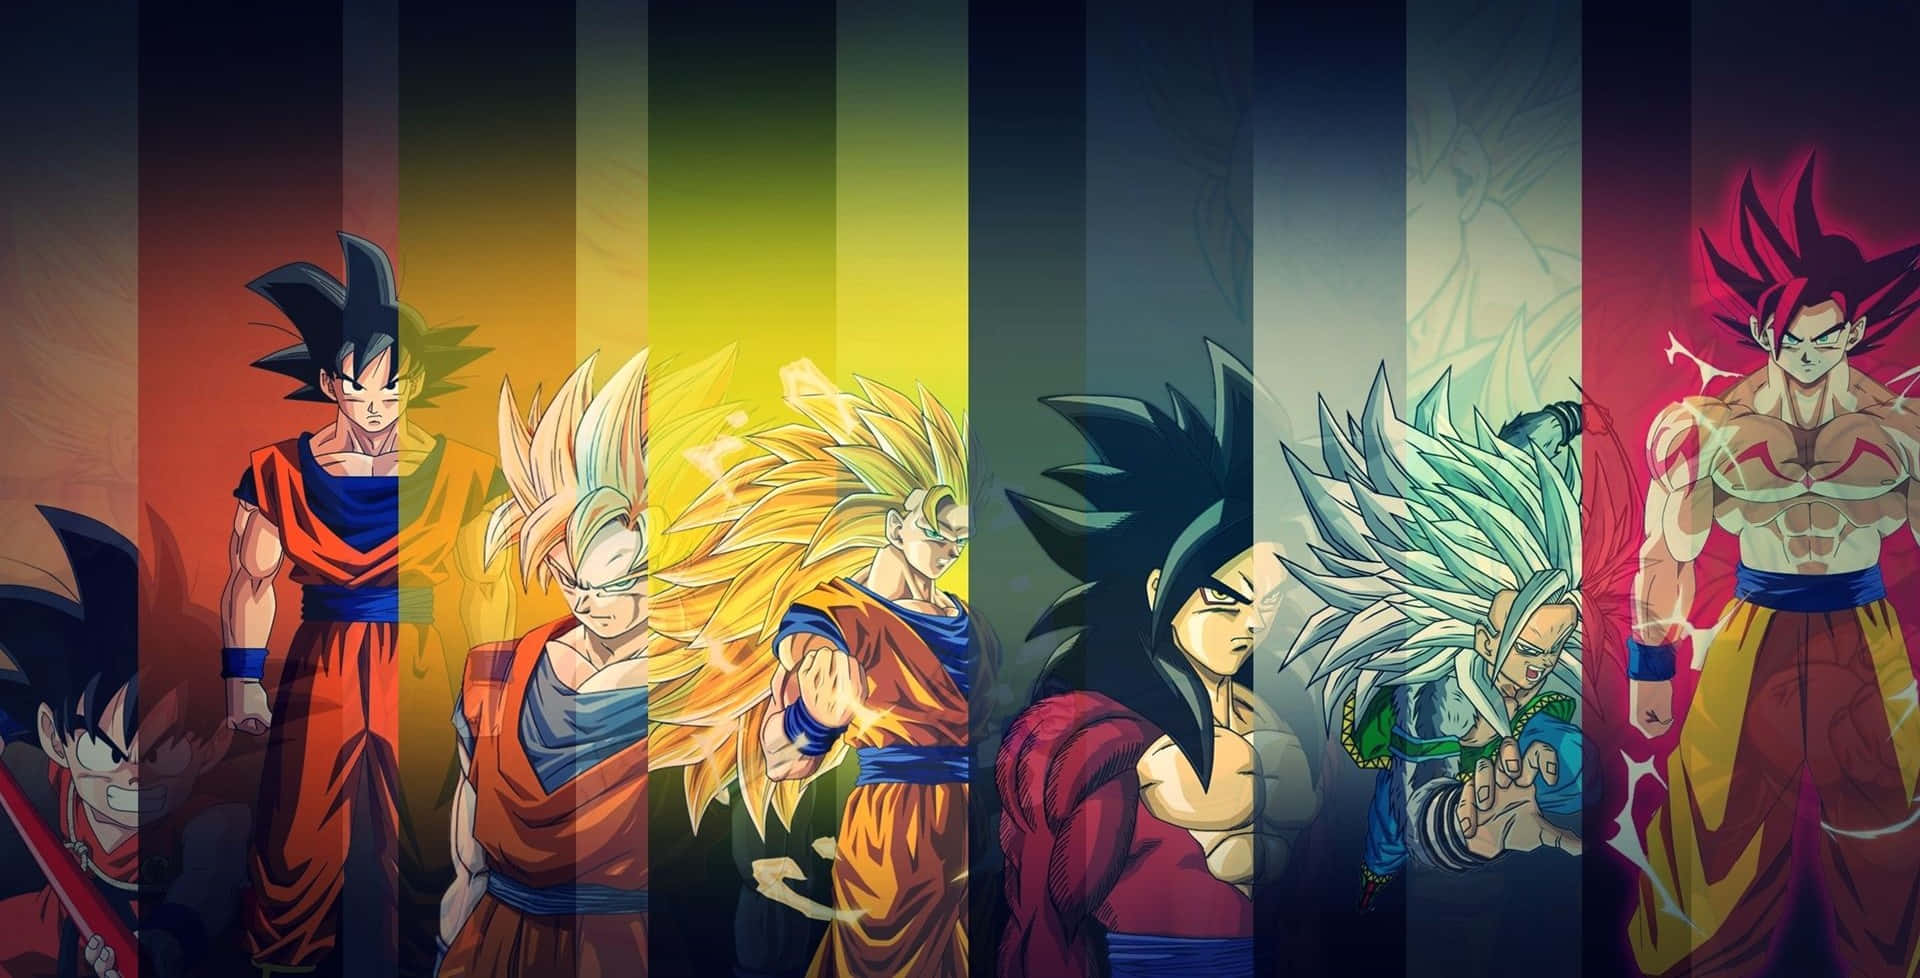 Free Dragon Ball Z Goku Wallpaper Downloads, [100+] Dragon Ball Z Goku  Wallpapers for FREE 